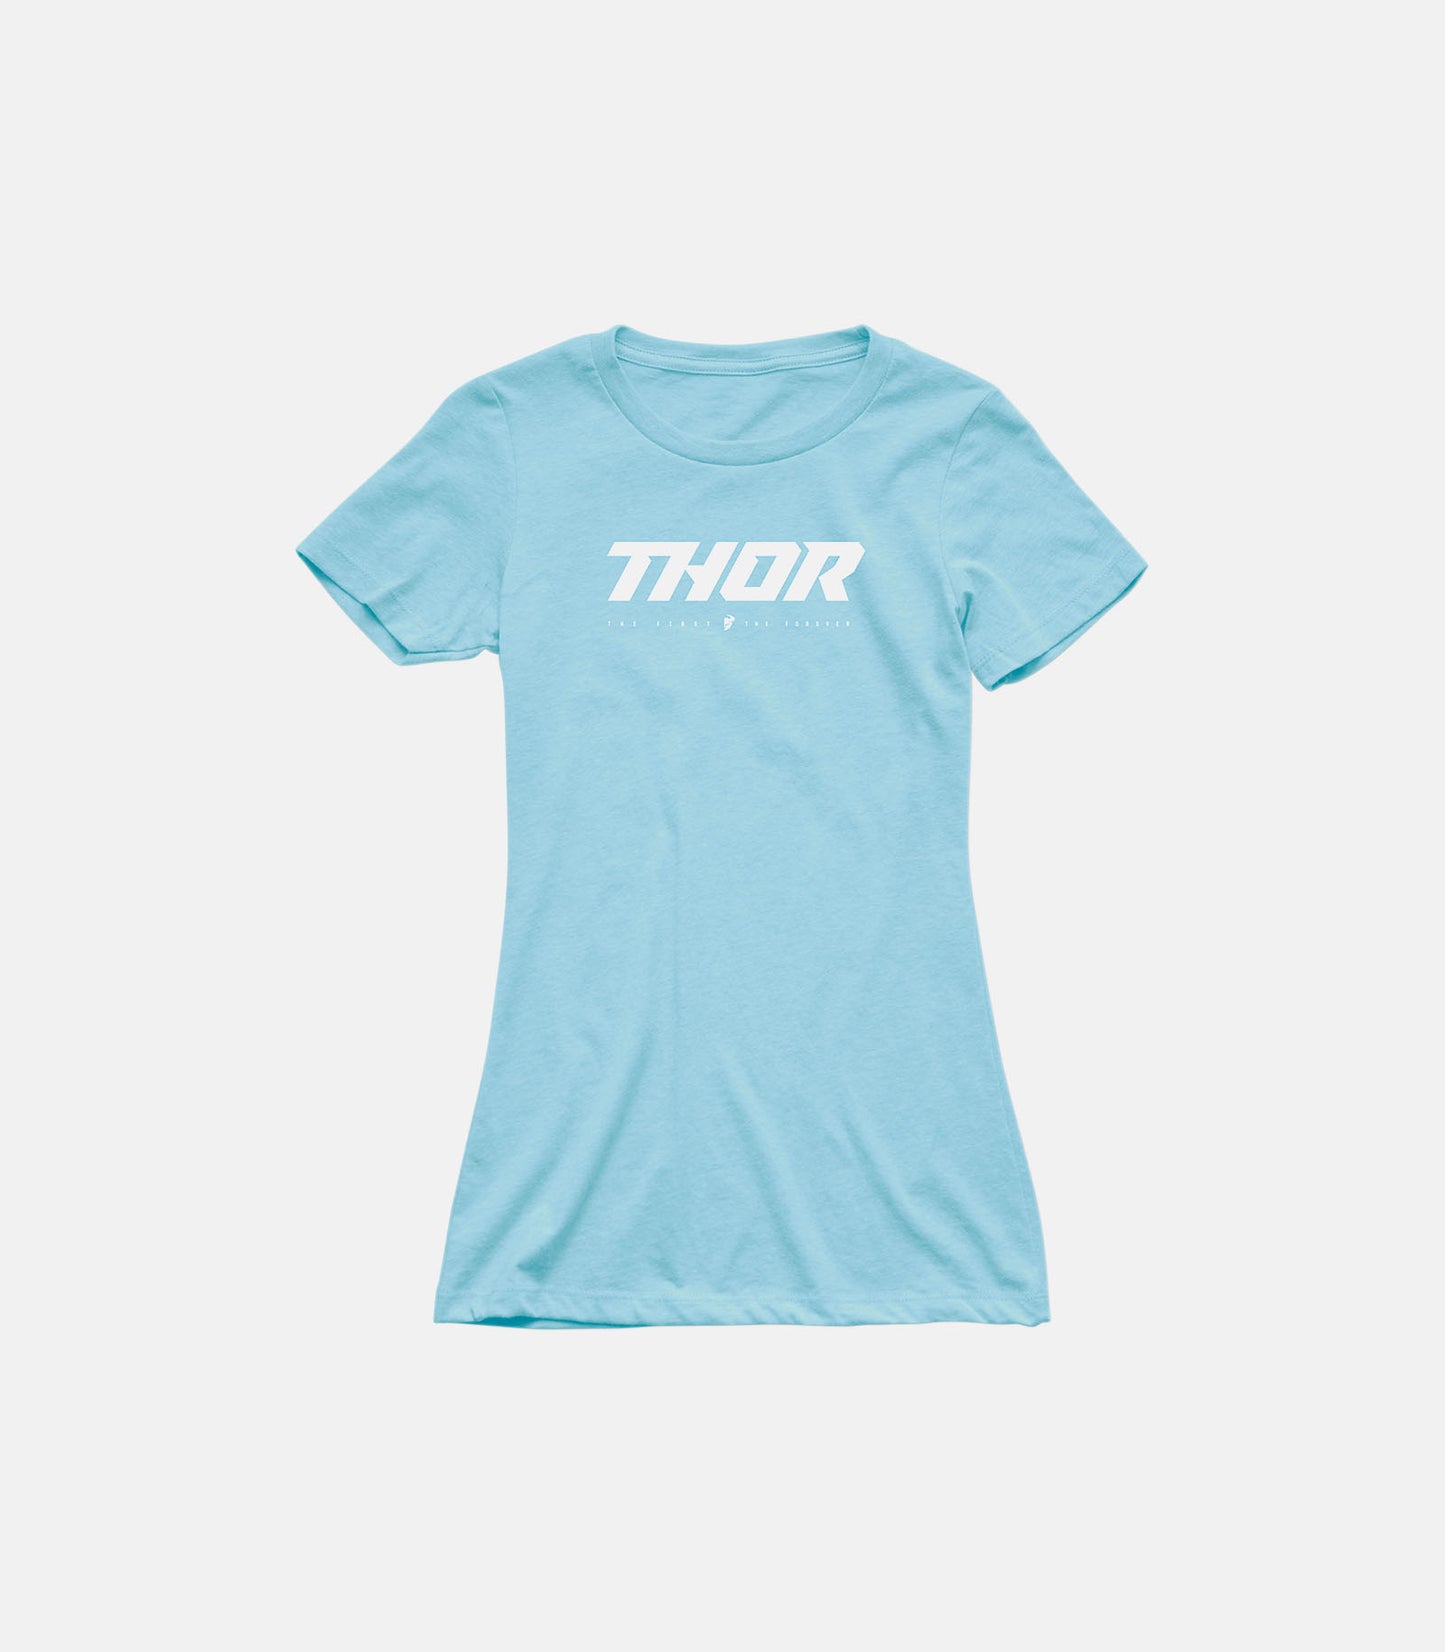 THOR Women's Loud T-Shirt - Light Blue